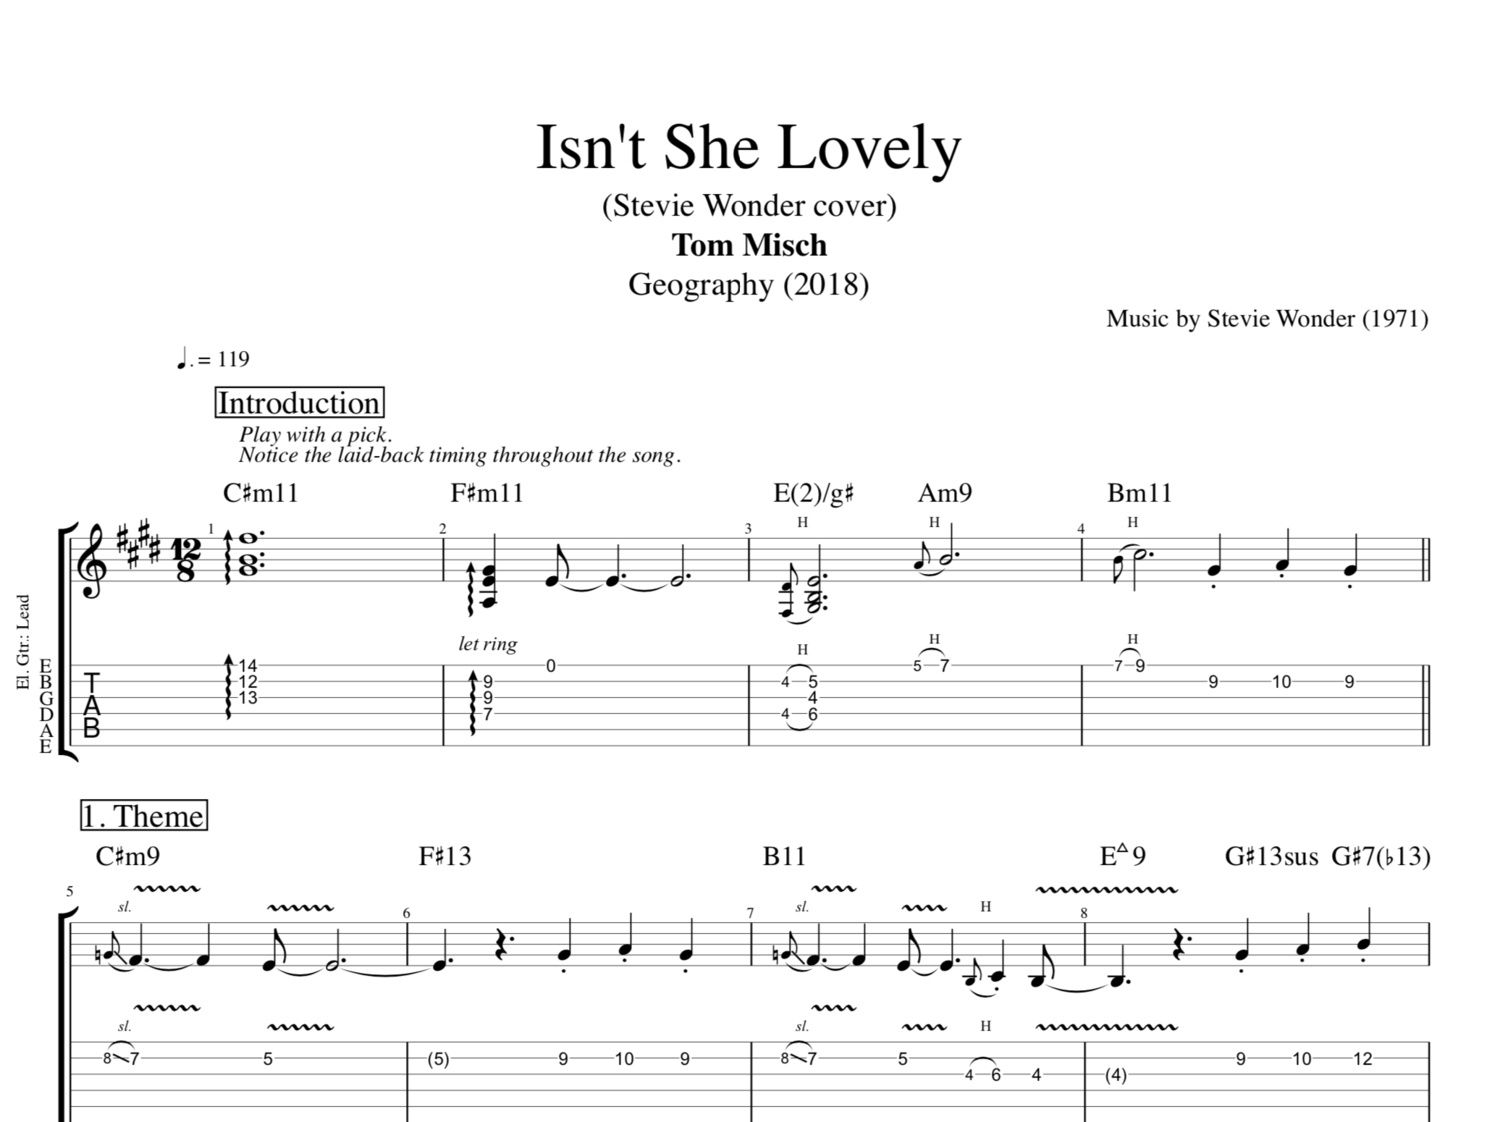 Free Isn't She Lovely by Stevie Wonder sheet music